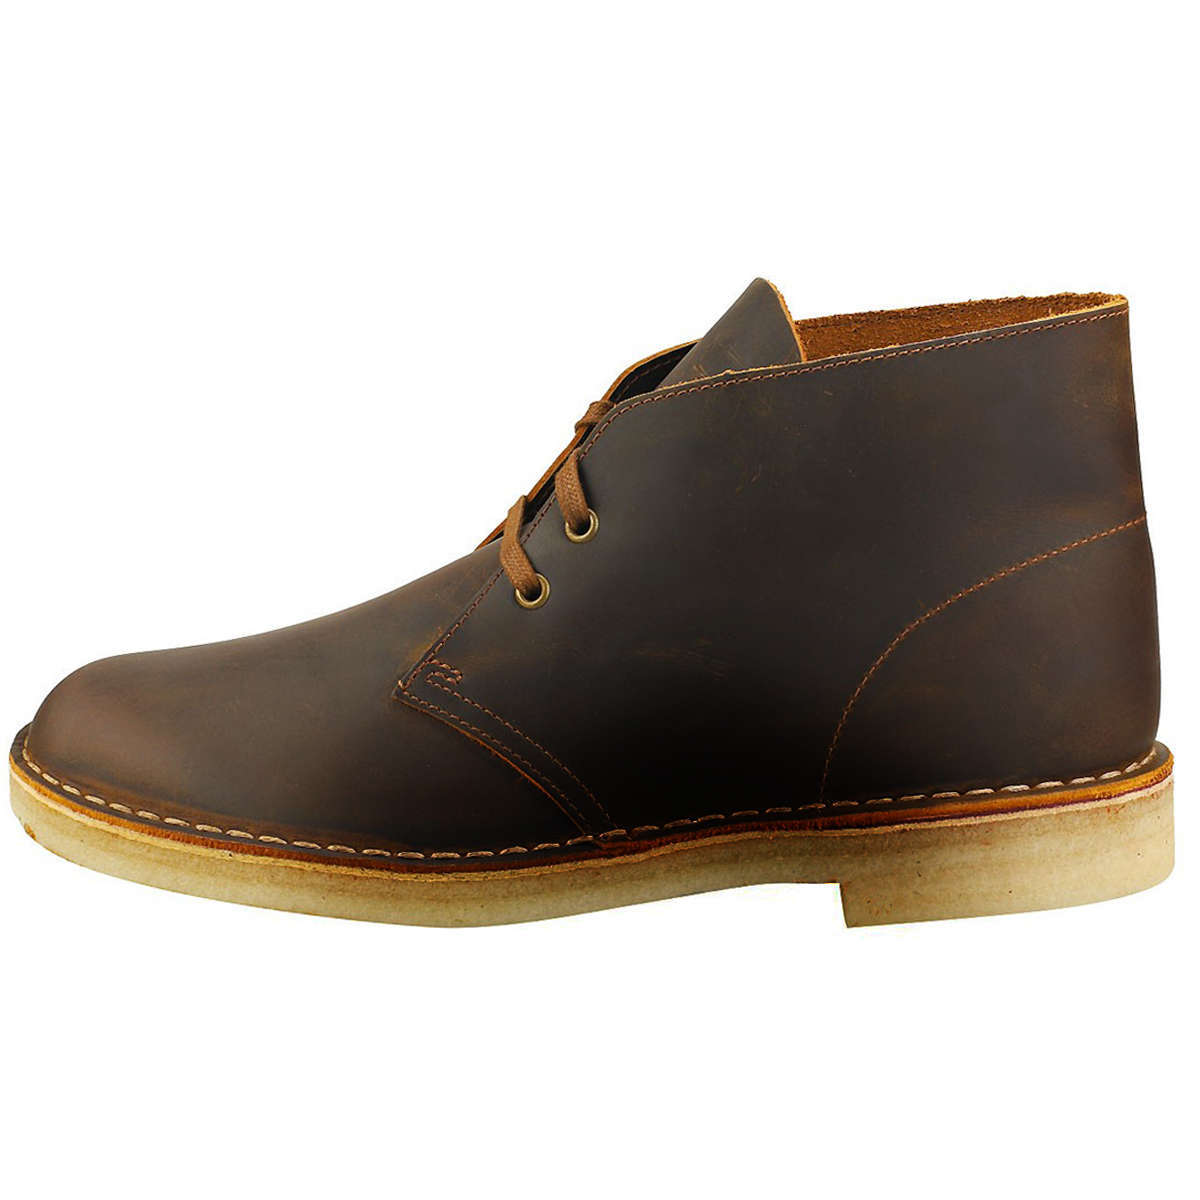 Clarks Originals Desert Boot Leather Men's Boots#color_dark beeswax